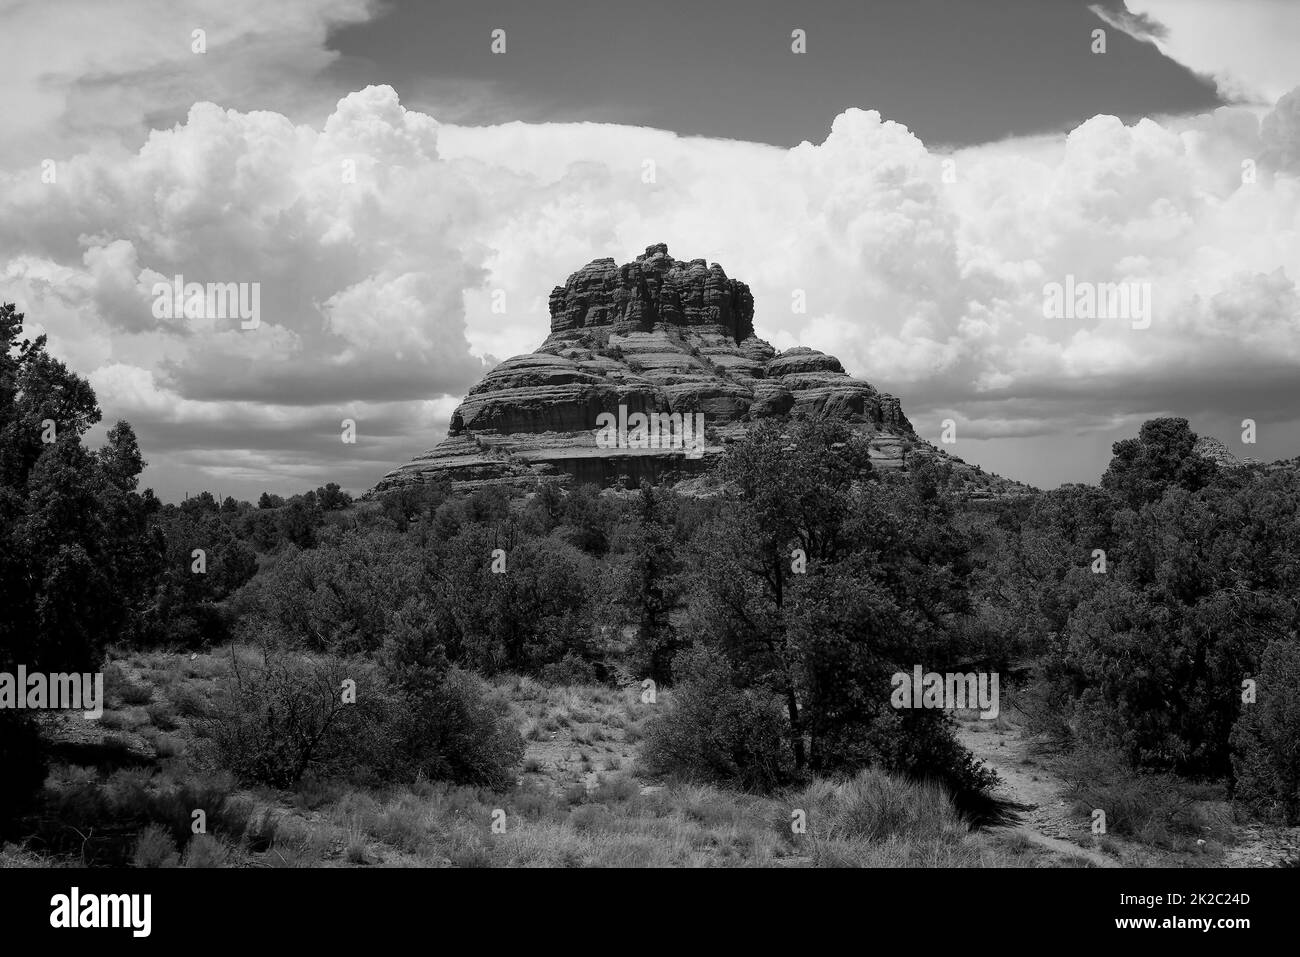 Sedona Arizona Mountains in black and white Stock Photo